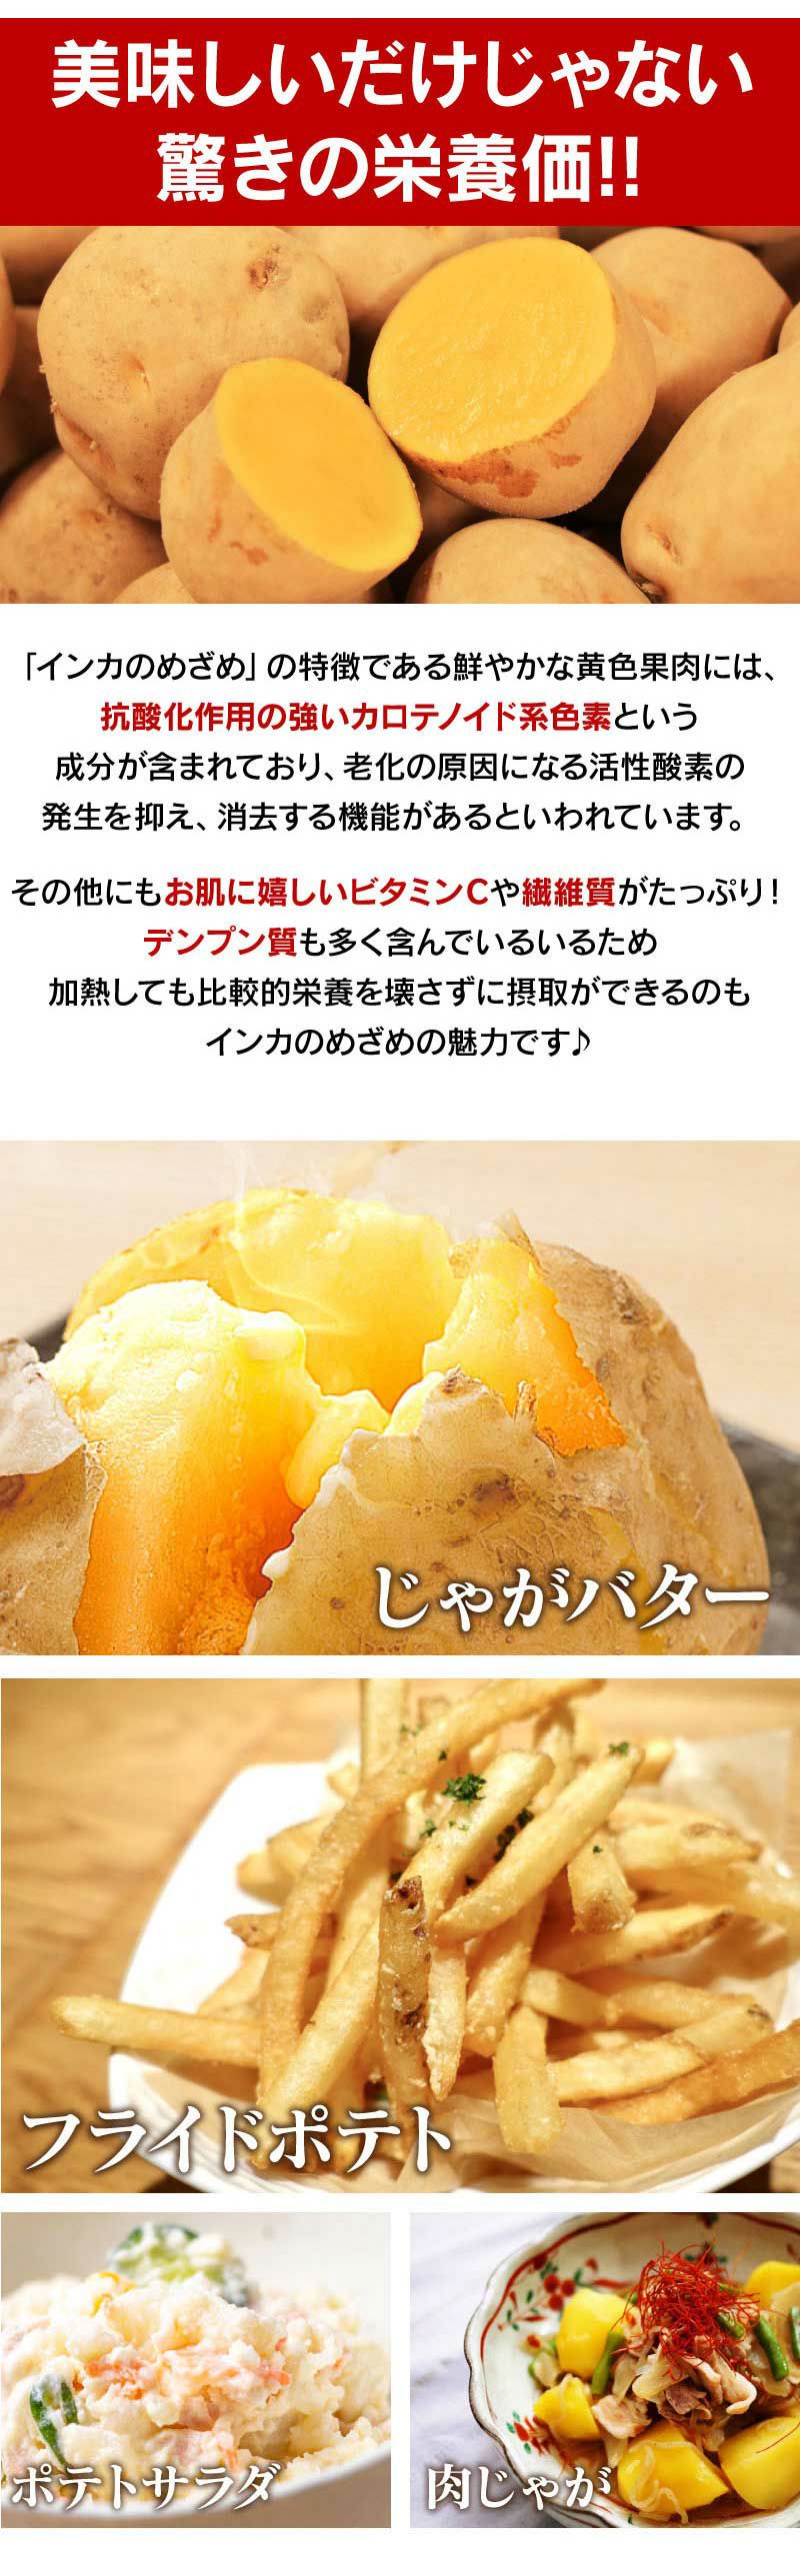 北海道ジャガイモ インカのめざめ 3kg（30玉前後）＜7月下旬より順次出荷＞ 送料無料 いも 芋 じゃがいも 新じゃが 農家直送 大嶌屋（おおしま屋）